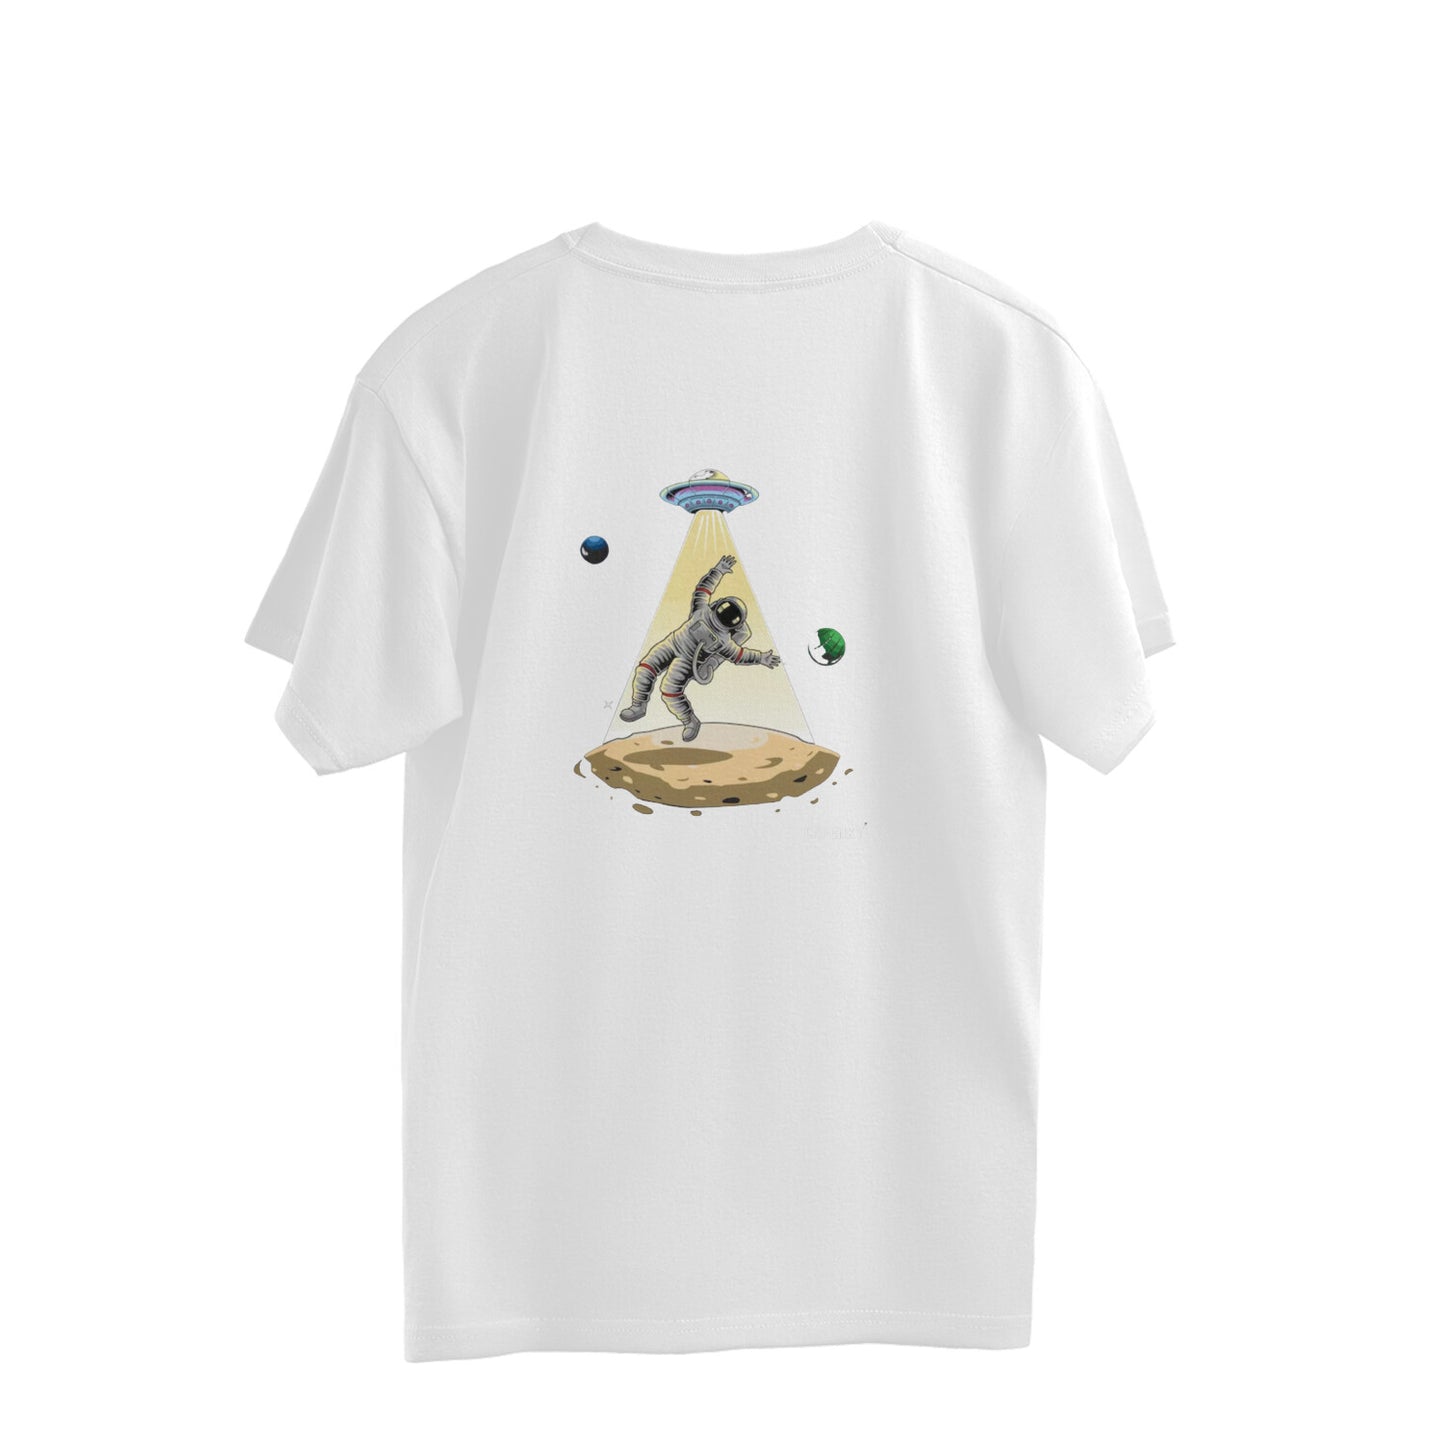 Alien Over Sized T-Shirt